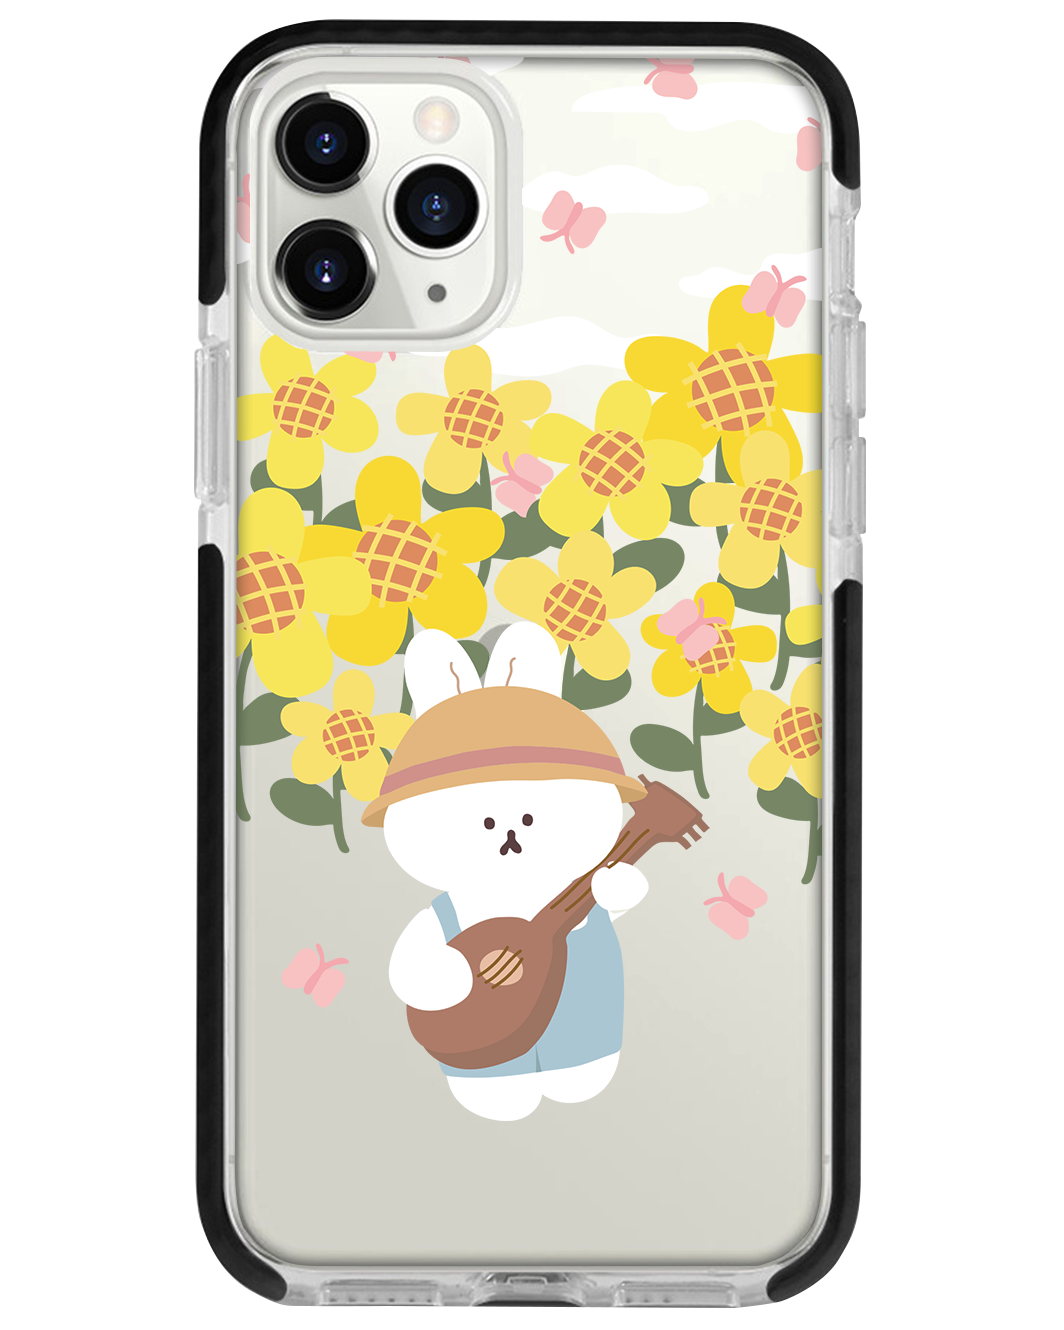 iPhone - Bunny Ukulele